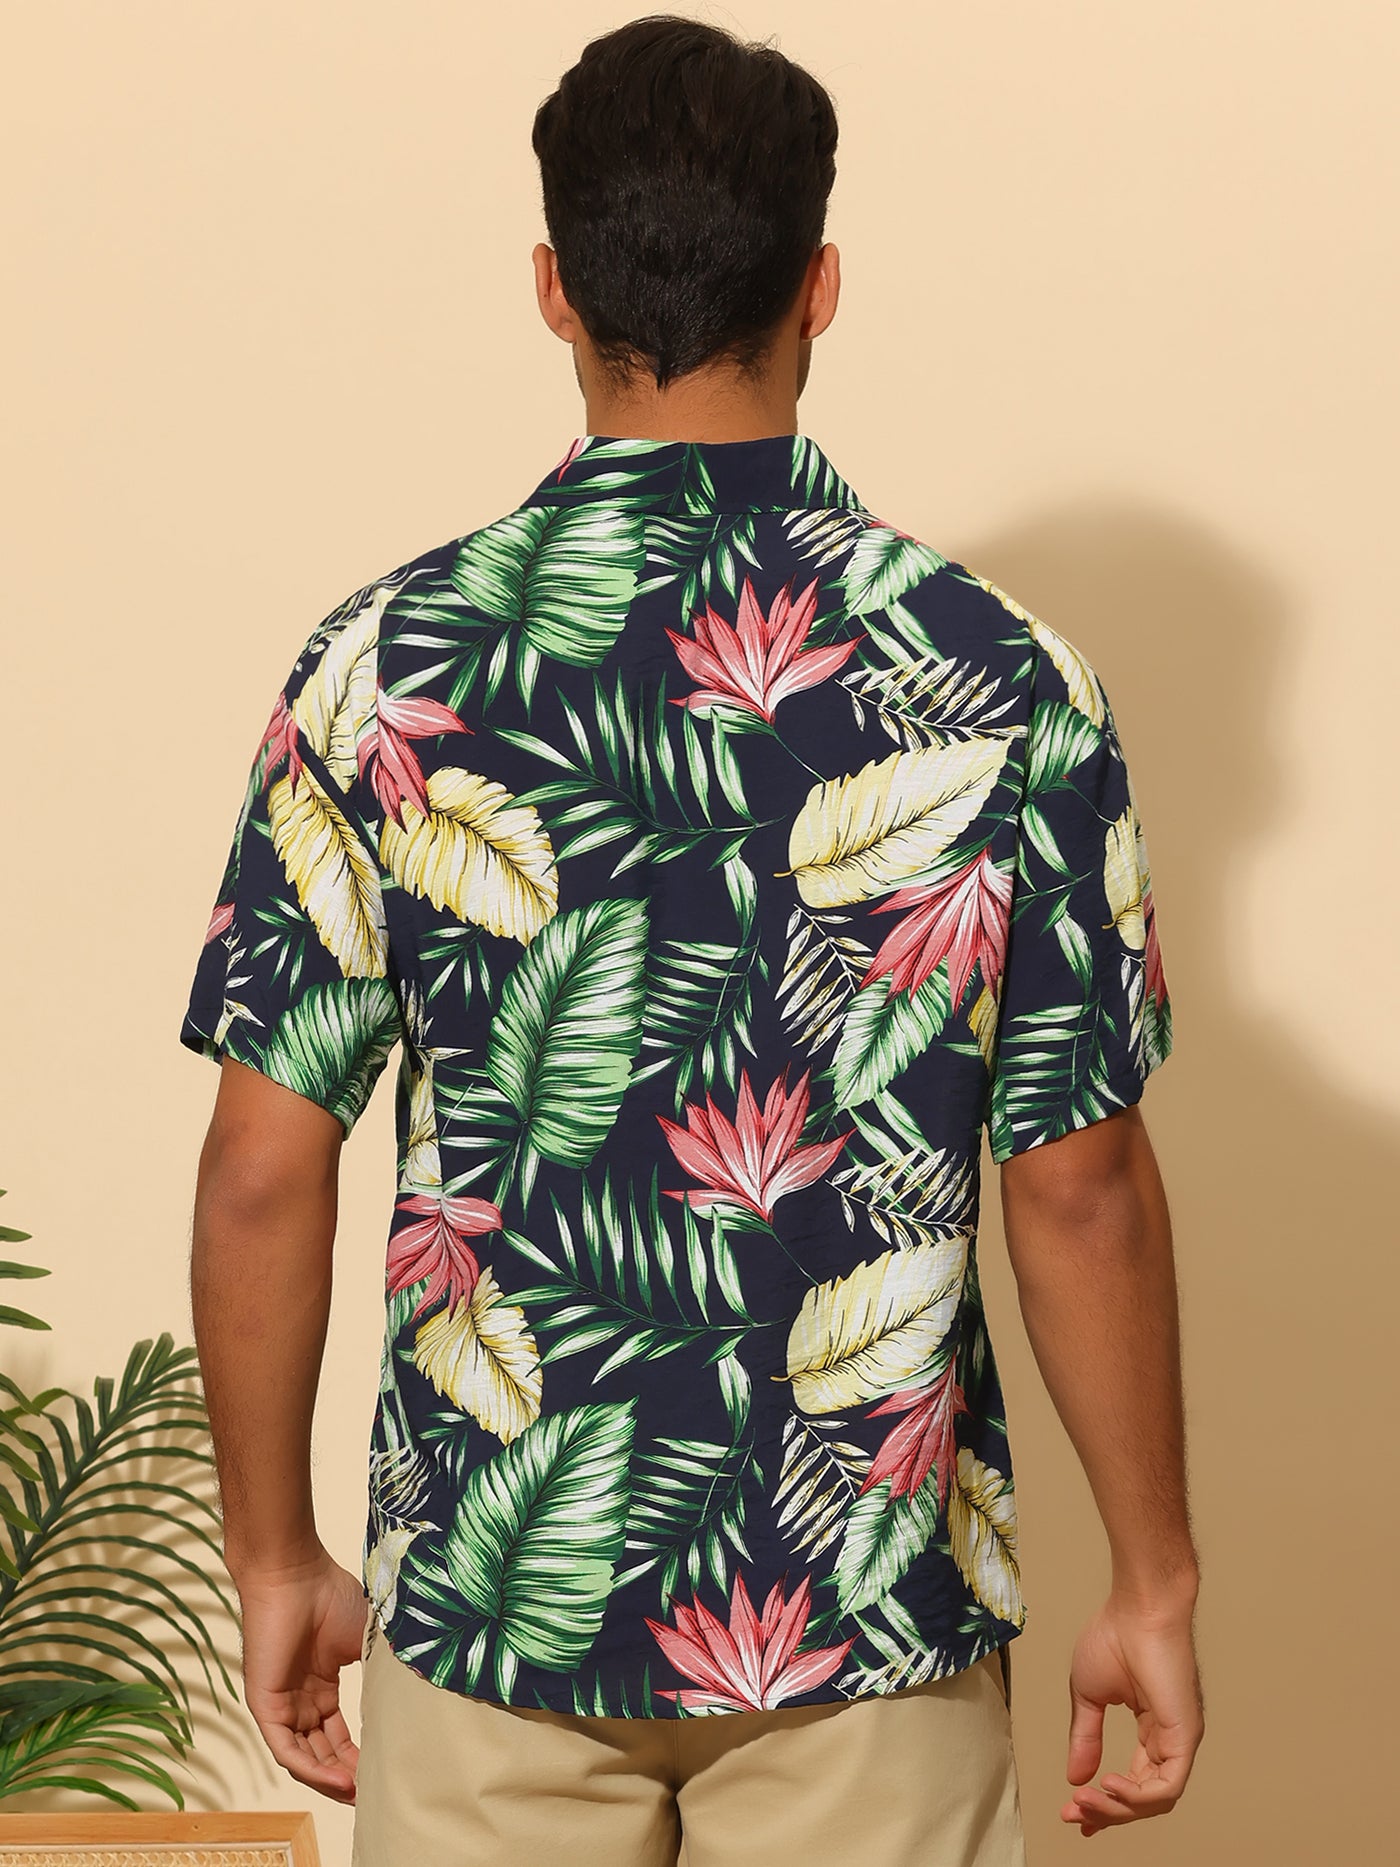 Bublédon Hawaiian Flower Shirt for Men's Short Sleeves Button Down Summer Beach Floral Shirts